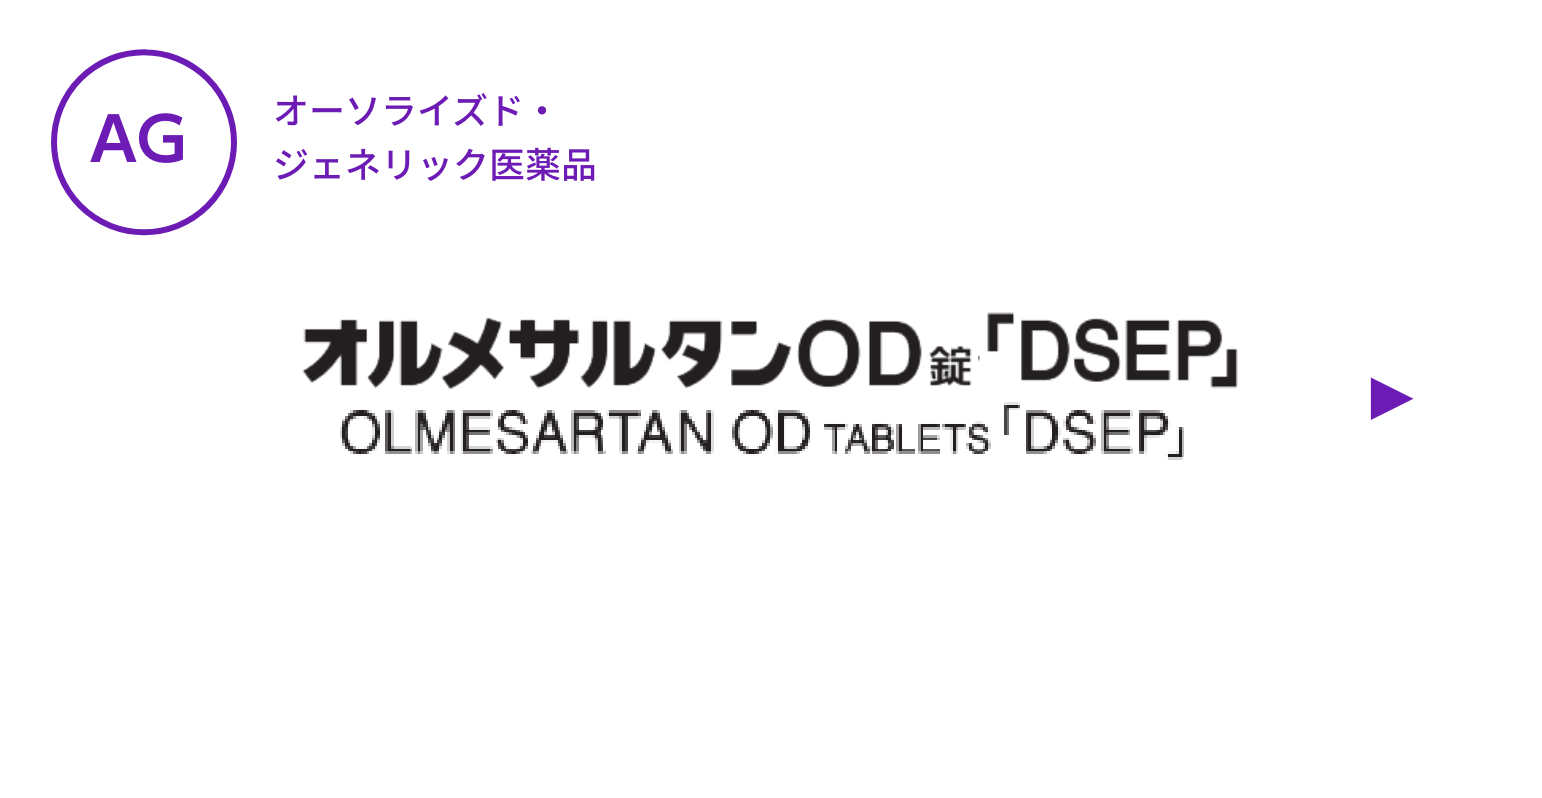 【AG】オルメサルタンOD錠「DSEP」